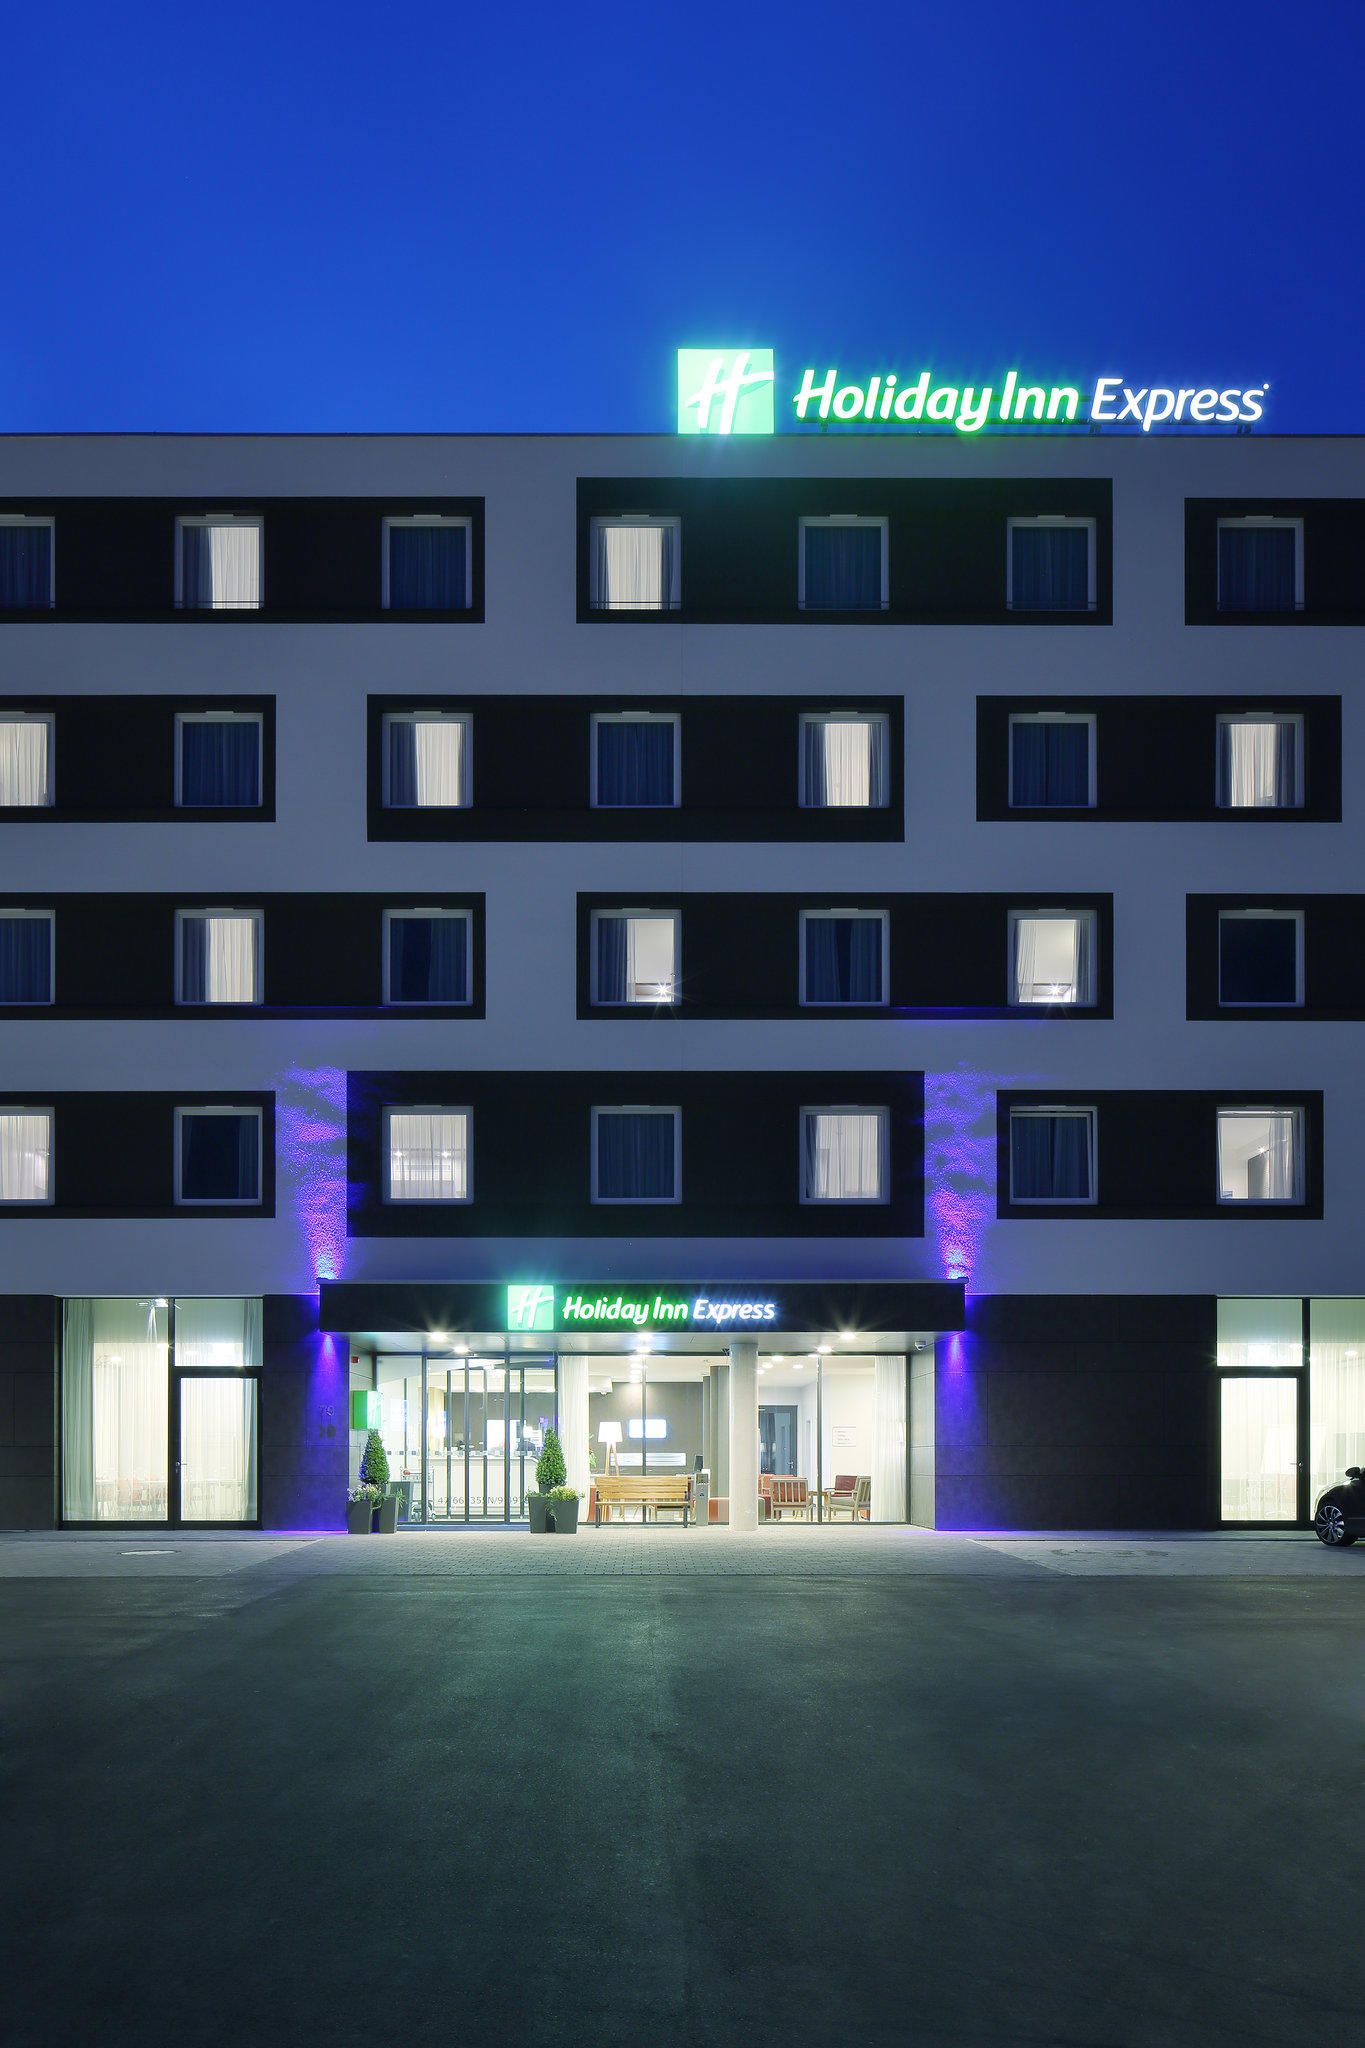 Holiday Inn Express - Öffnungszeiten Holiday Inn Express ...